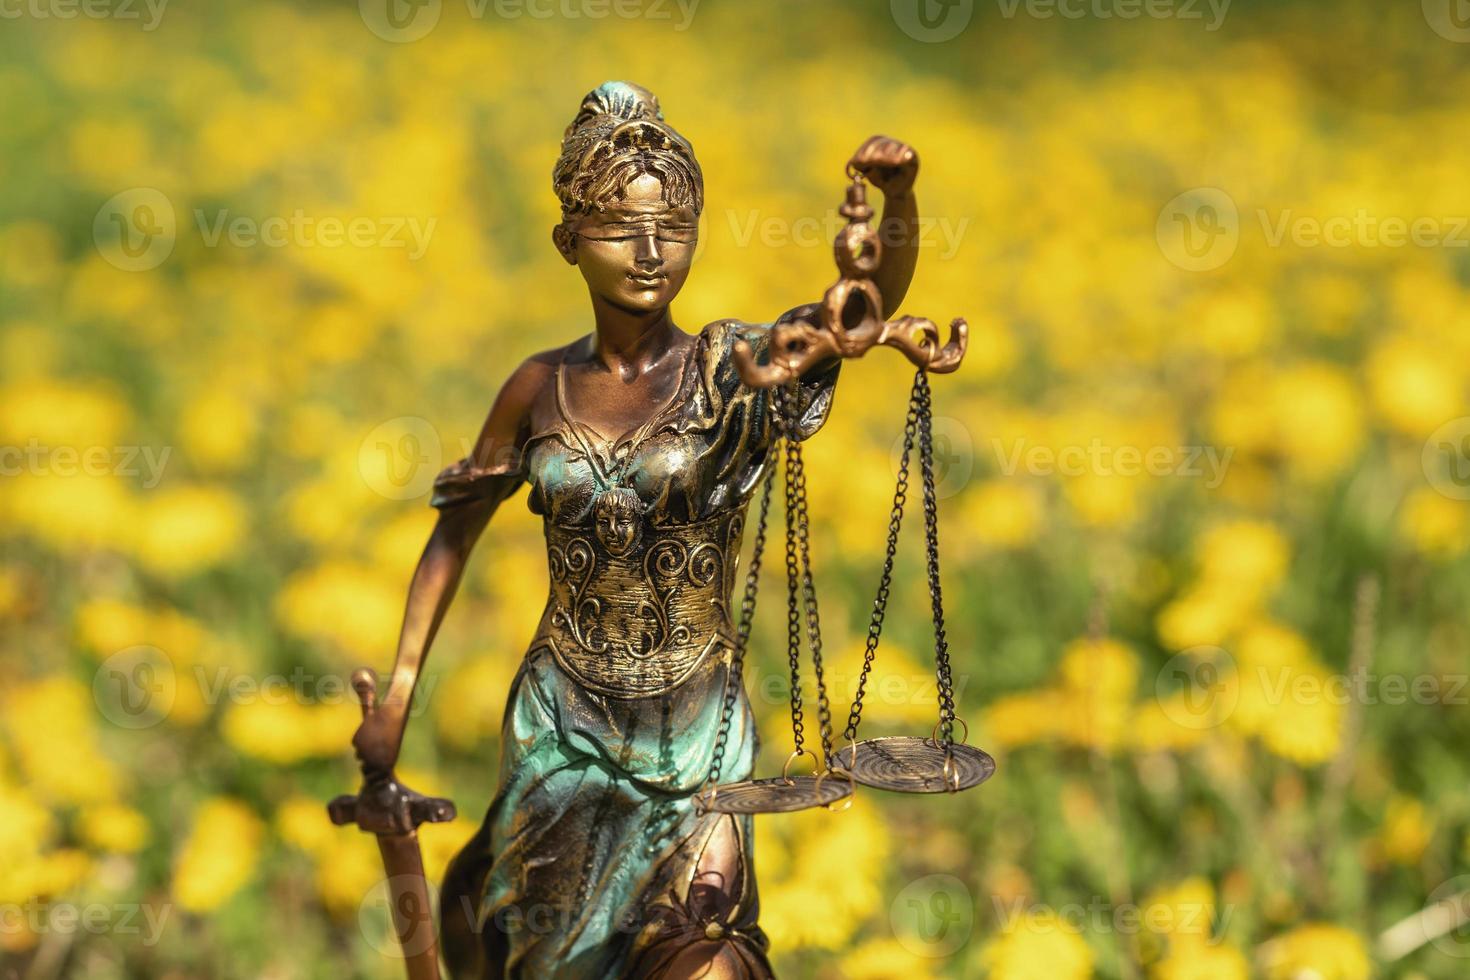 estátua de themis contra um gramado de dentes de leão. símbolo de justiça e lei, crime e punição. foto